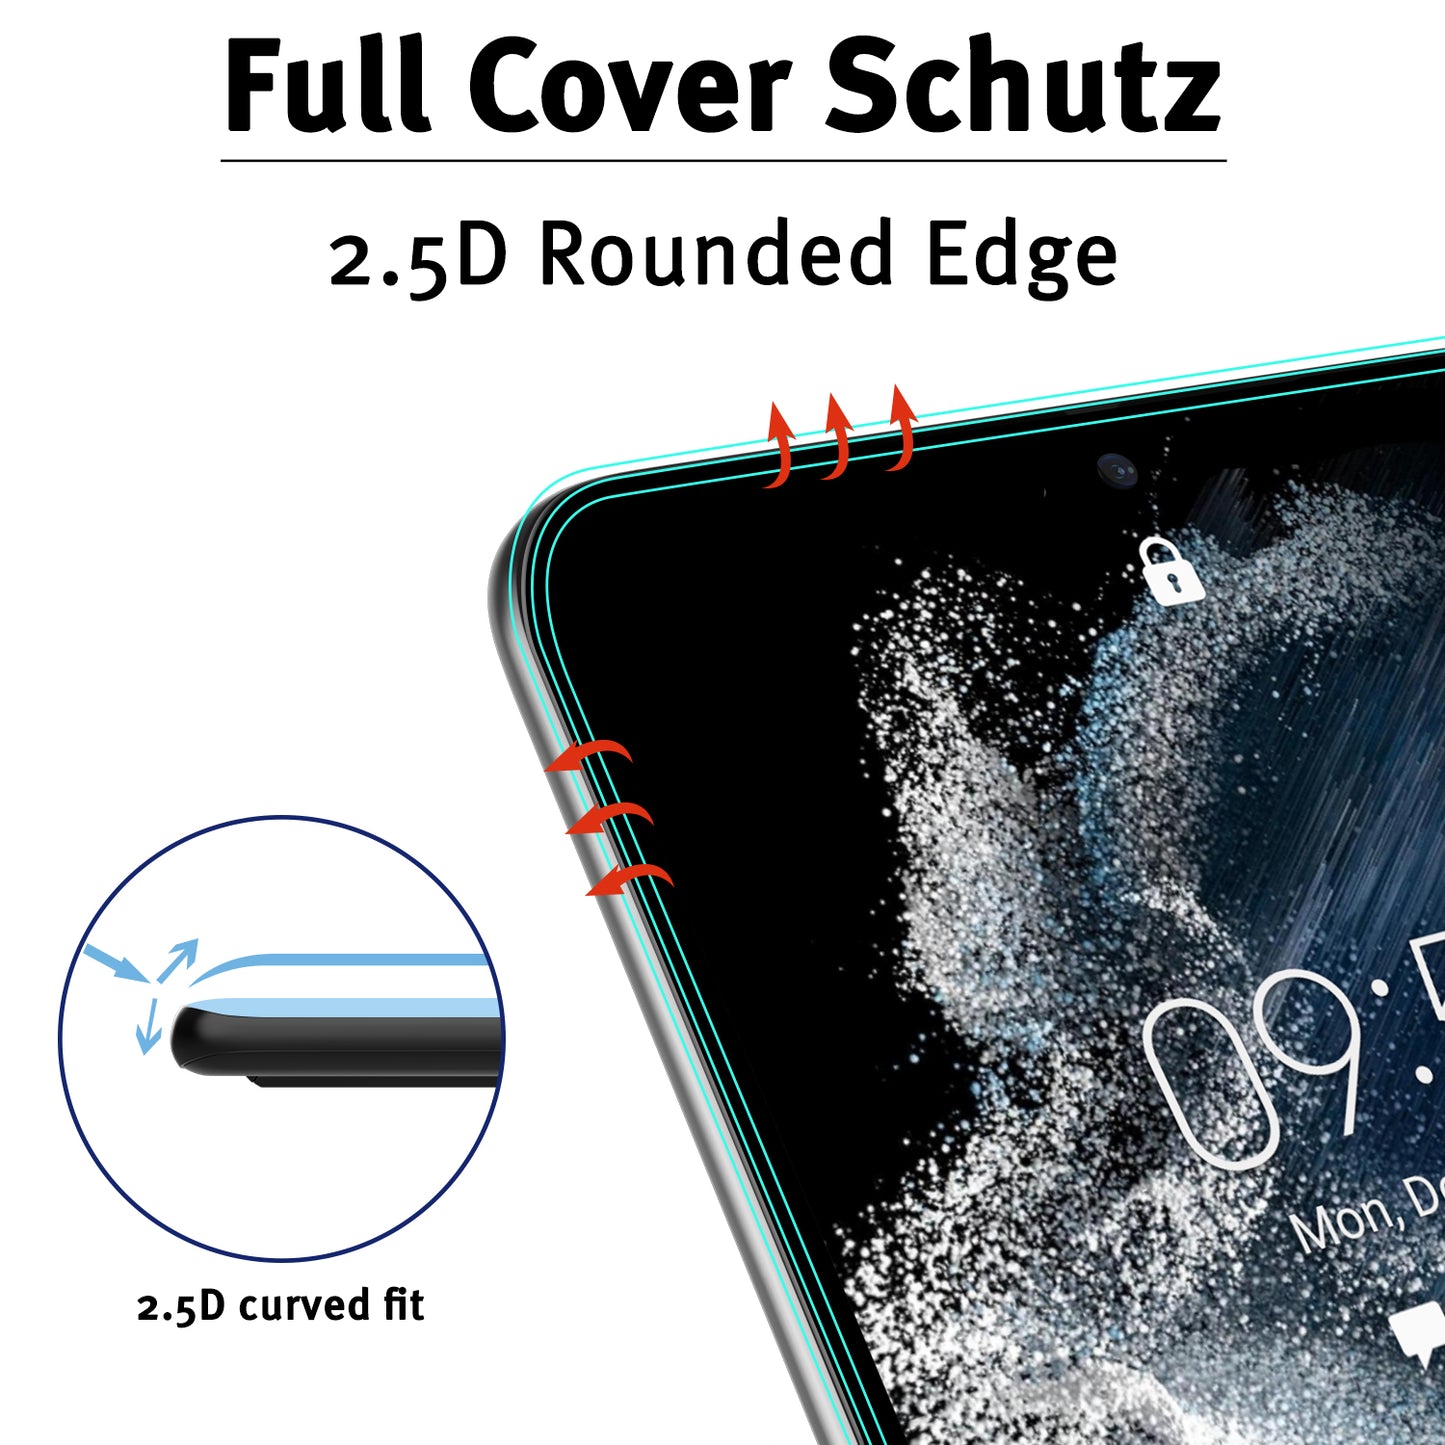 ArktisPRO Samsung Galaxy S22 FULL COVER Displayschutz GLAS - hüllenfreundlich - 2er Set